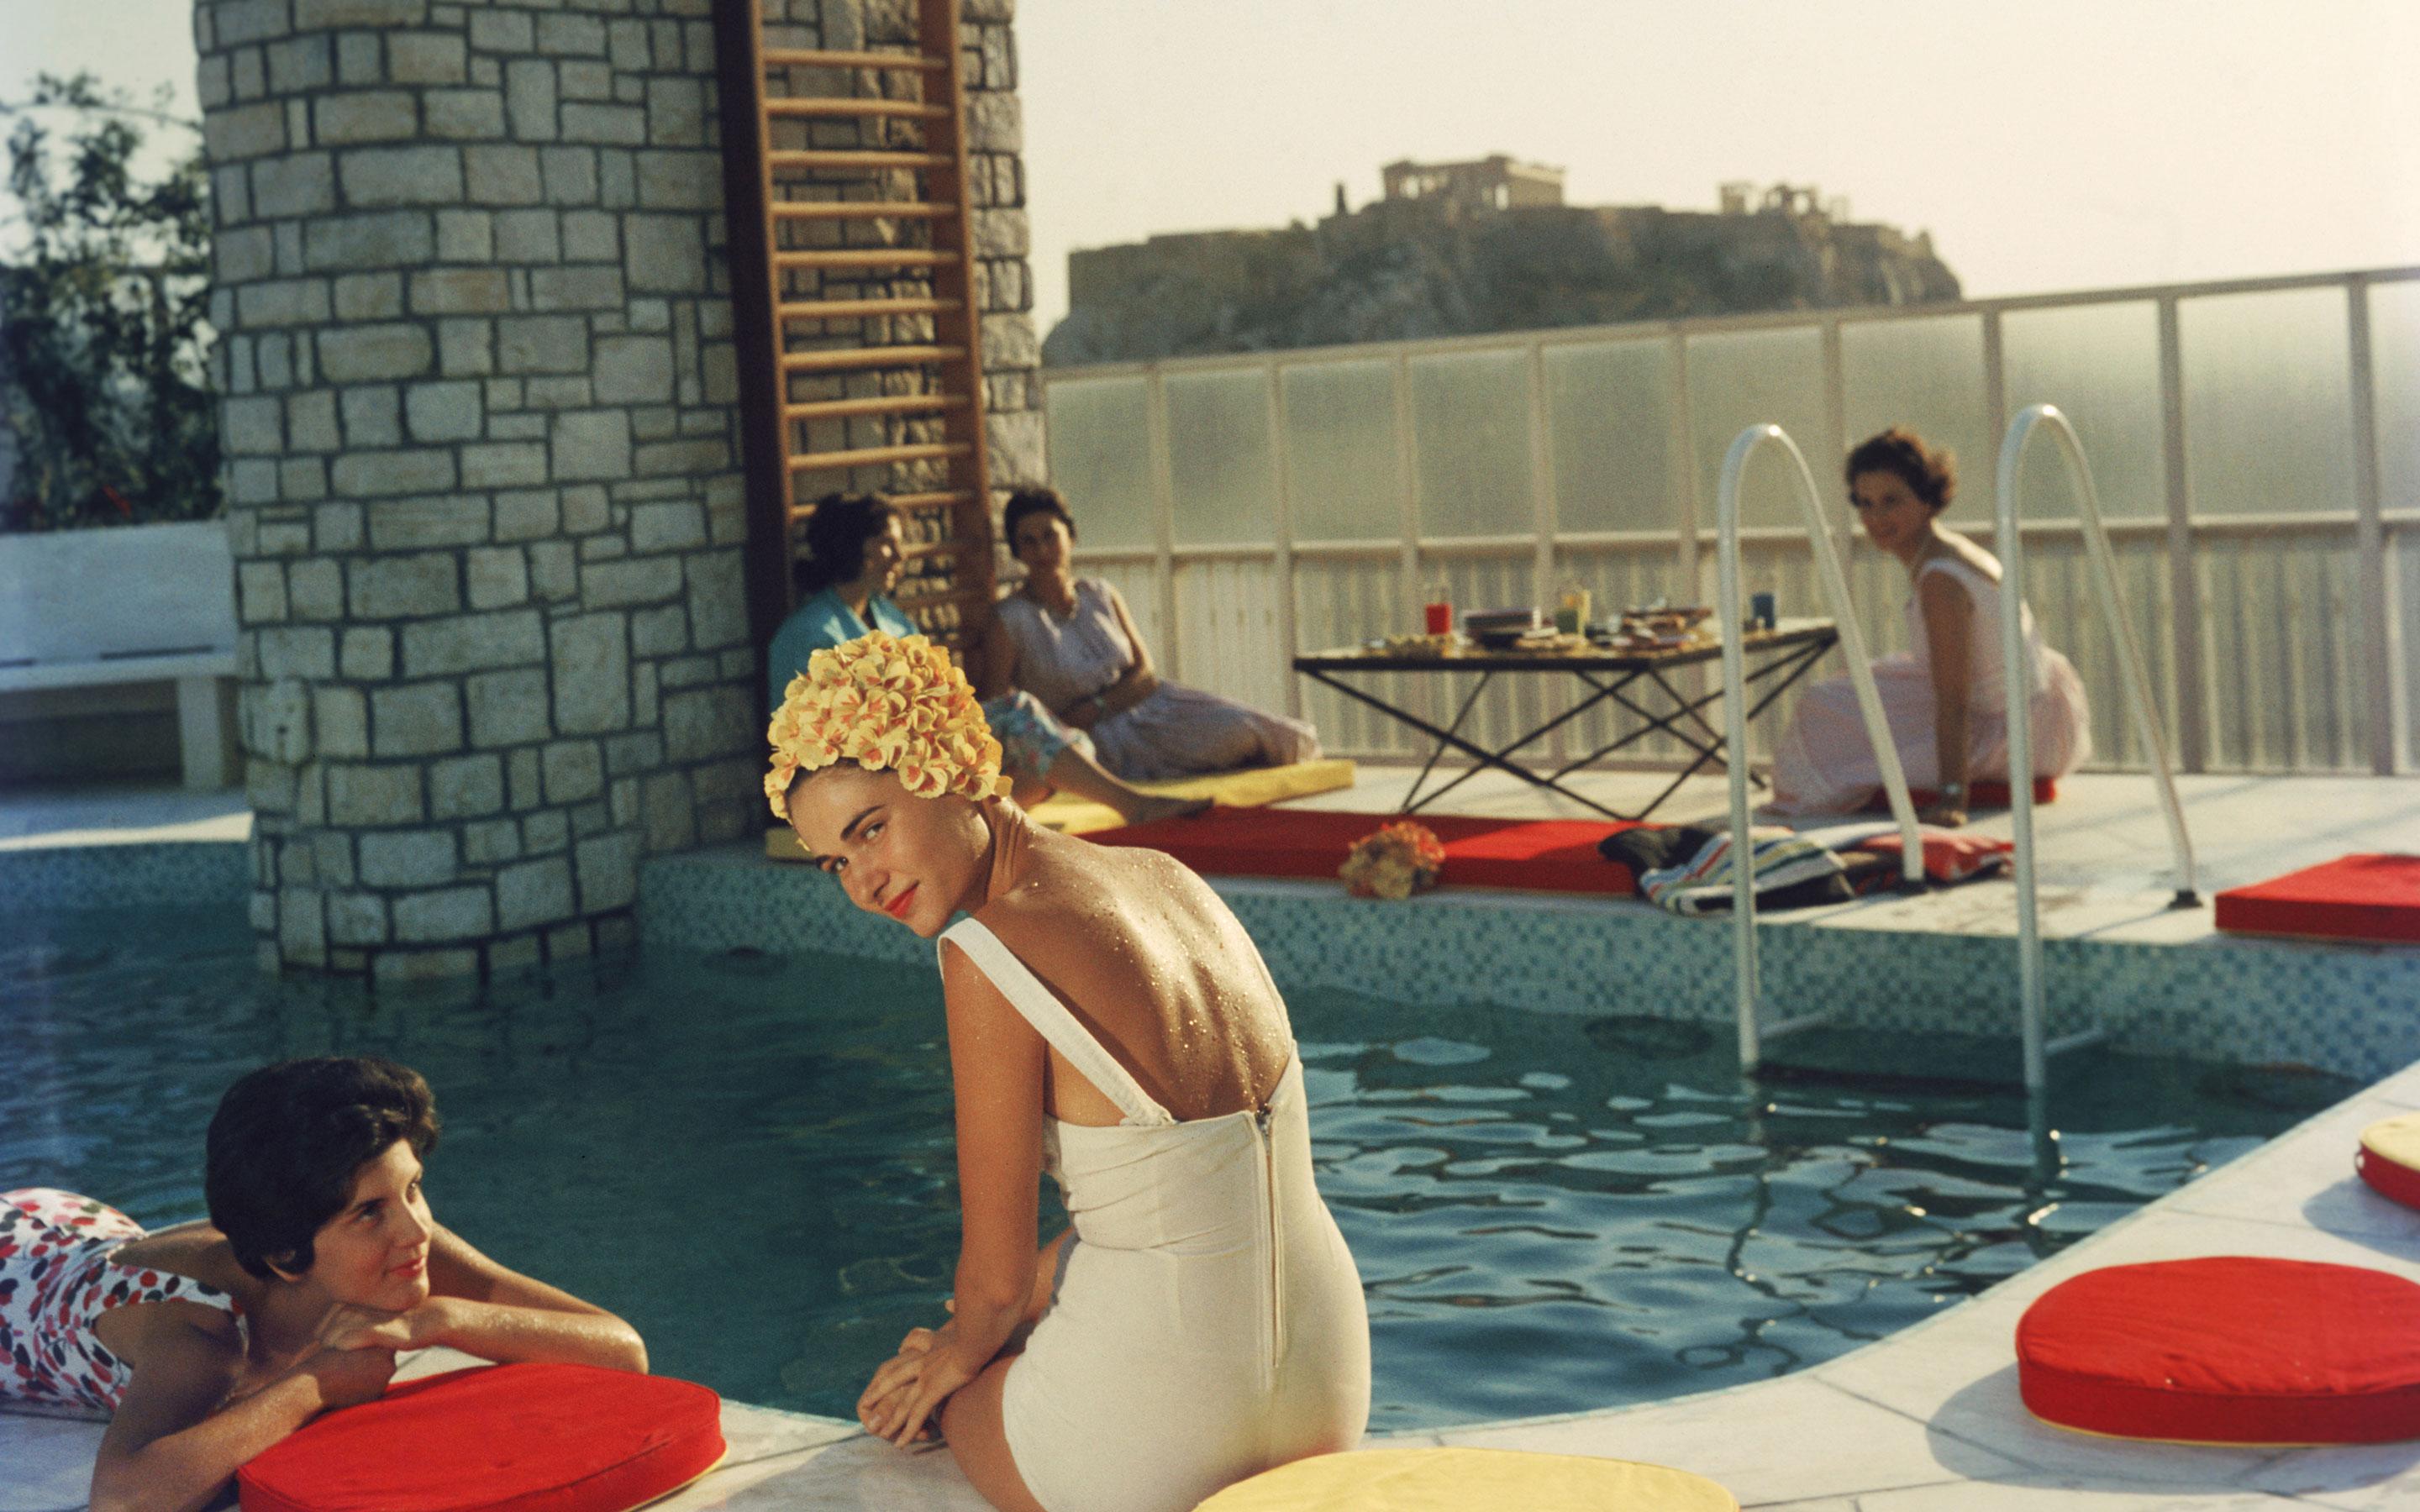 Jeunes femmes au bord de la piscine du penthouse Canellopoulos, Athènes, juillet 1961.

Cette photographie fait partie de l'édition limitée à 150 exemplaires de la succession
40x40”
C-print, d'après le transparent original
Imprimé plus tard
Avec